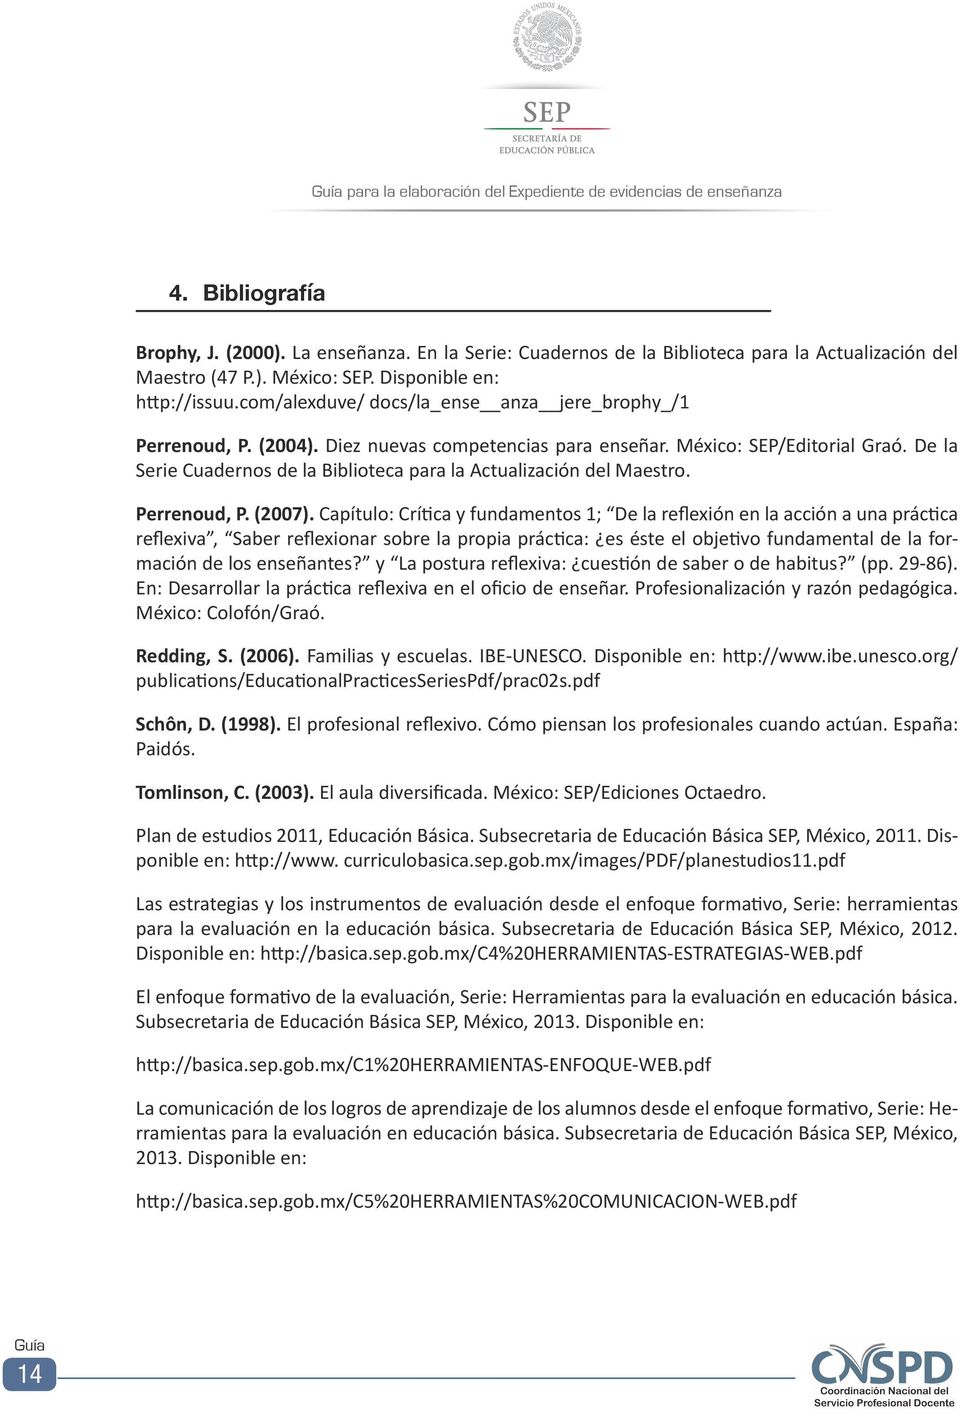 De la Serie Cuadernos de la Biblioteca para la Actualización del Maestro. Perrenoud, P. (2007).